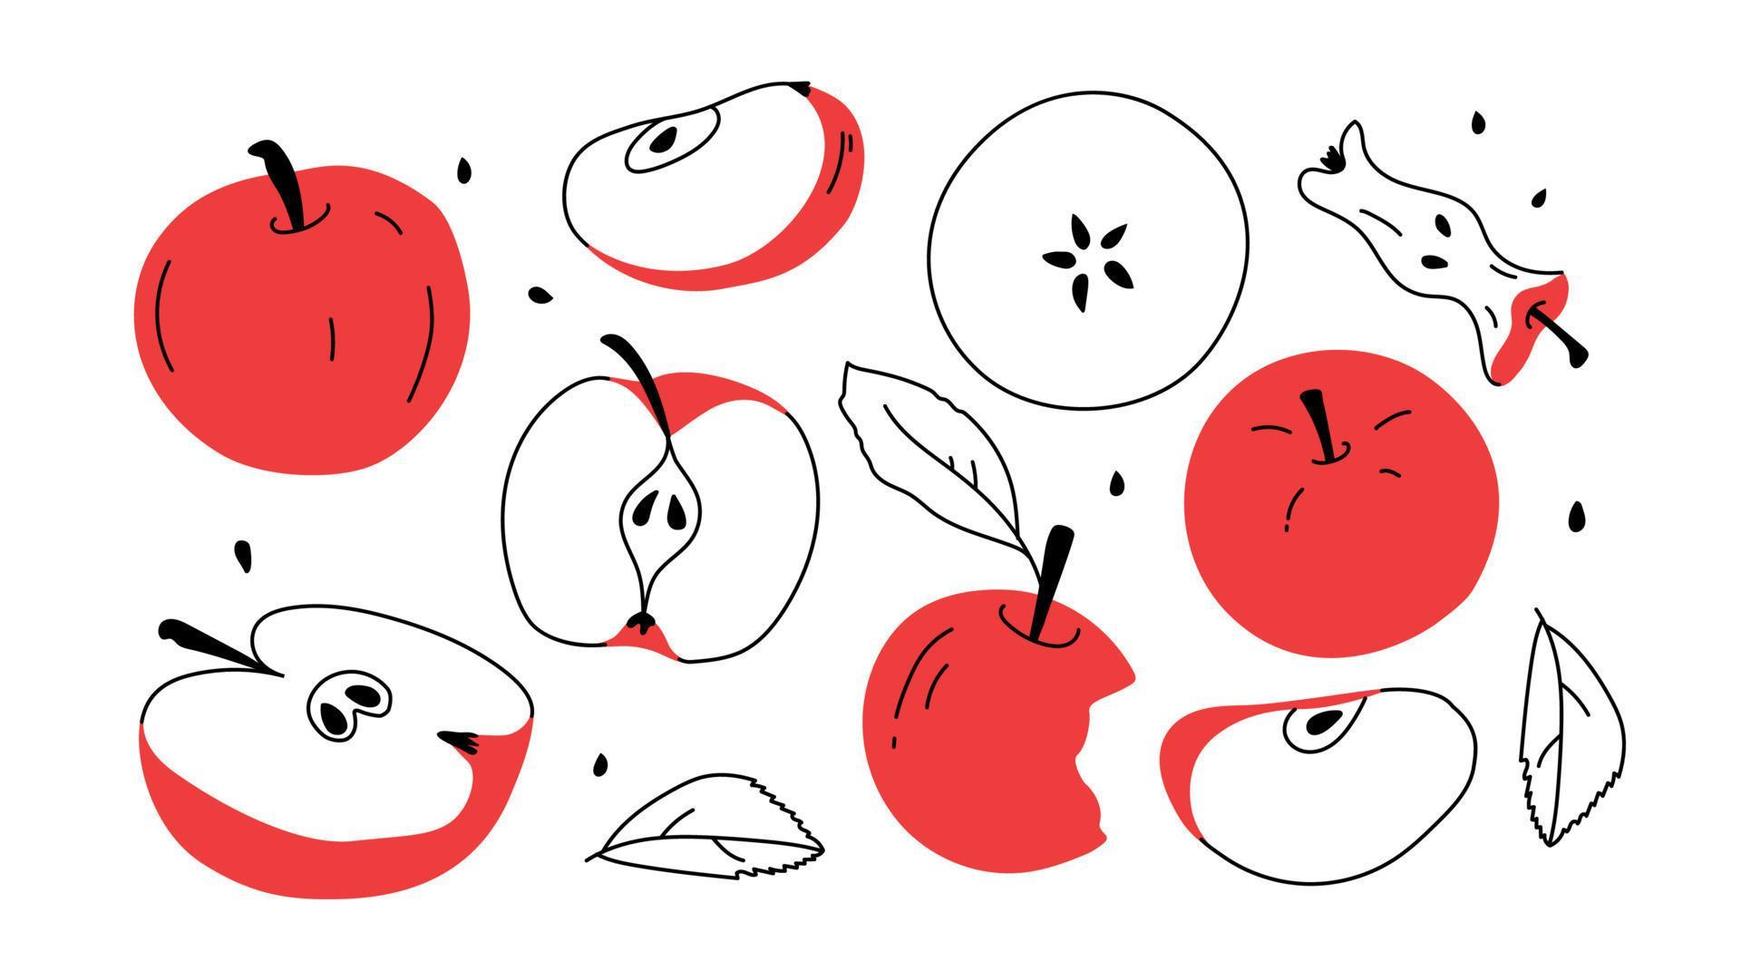 set med rött äpple och äppelskivor. handritade element frukt kärna och hälften av äpple. doodle, enkelt vektor